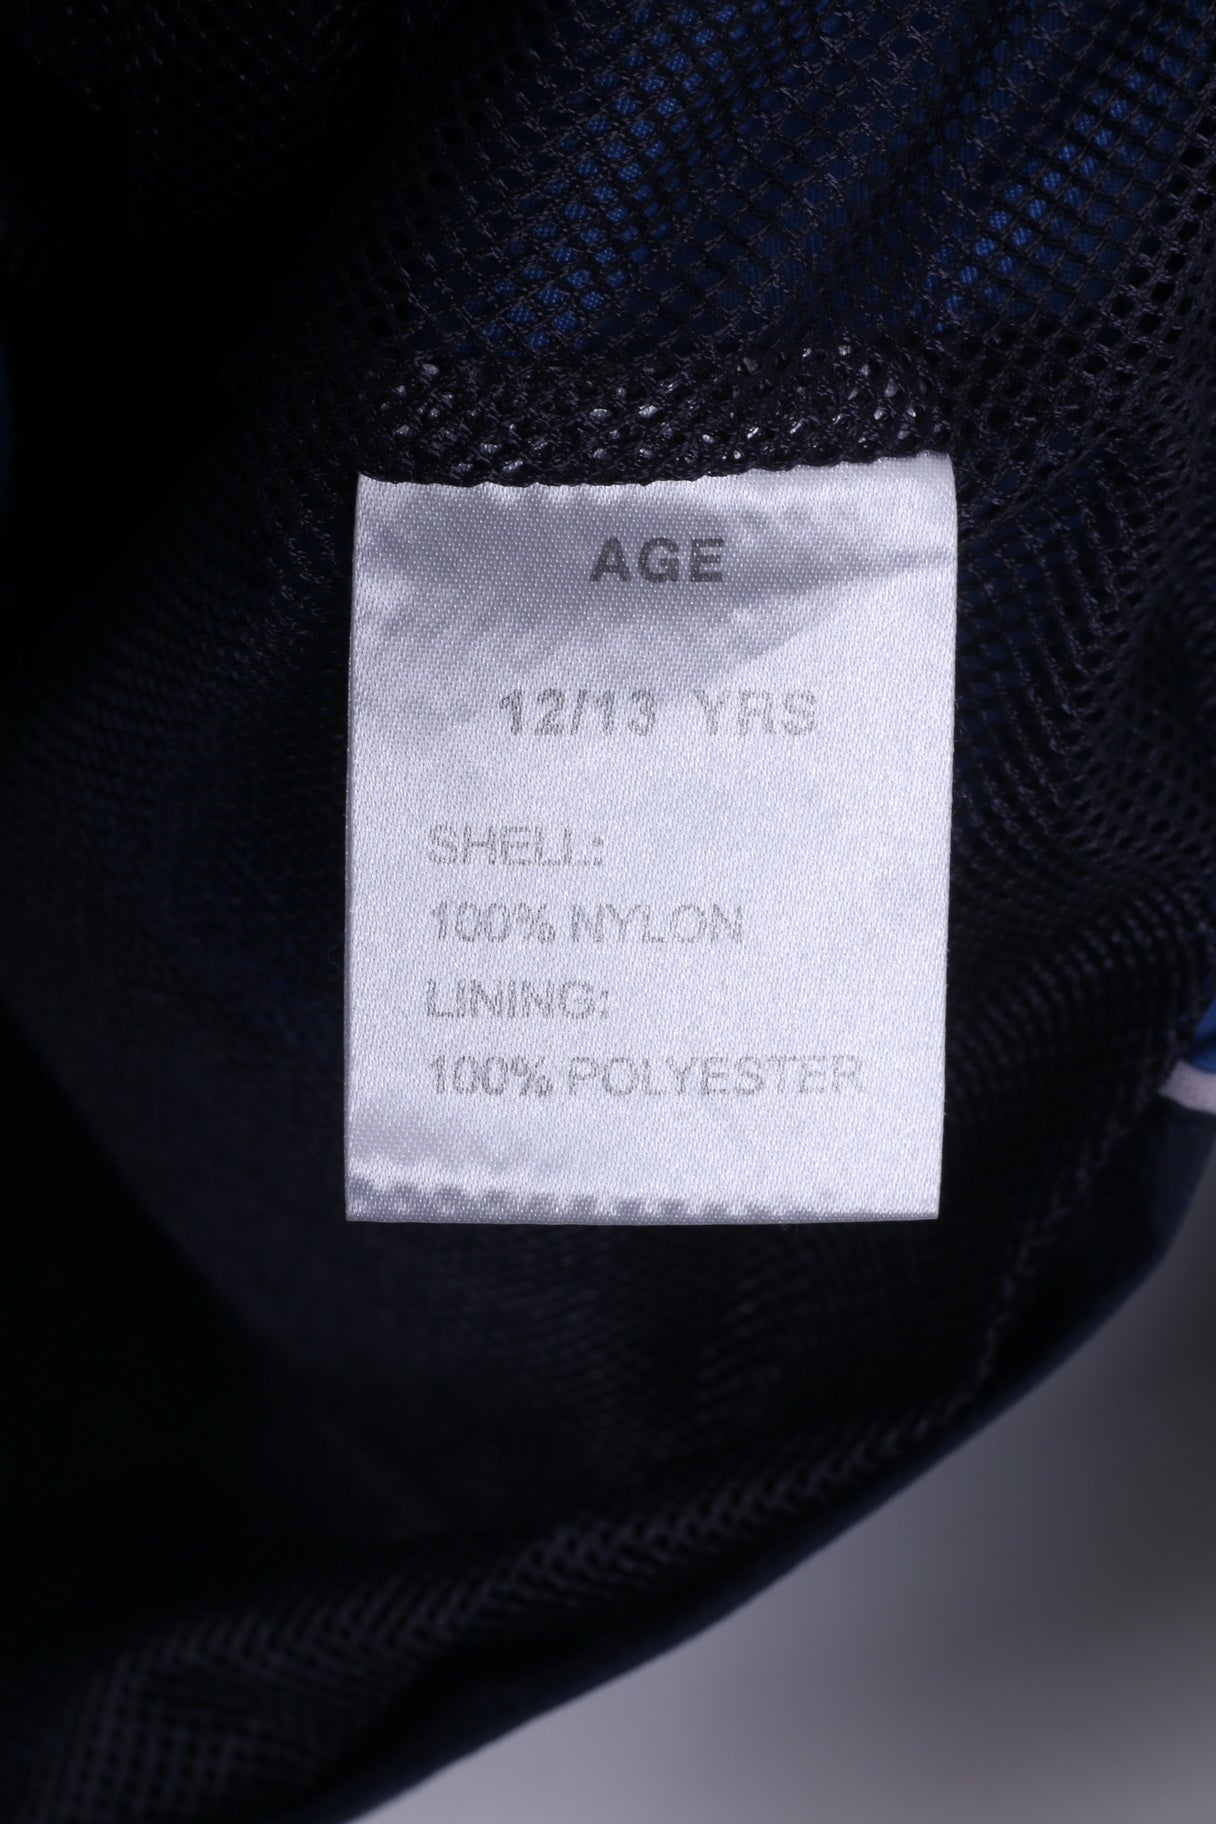 Giacca USAthletic da ragazzo 12/13 anni con cerniera completa in nylon blu scuro impermeabile